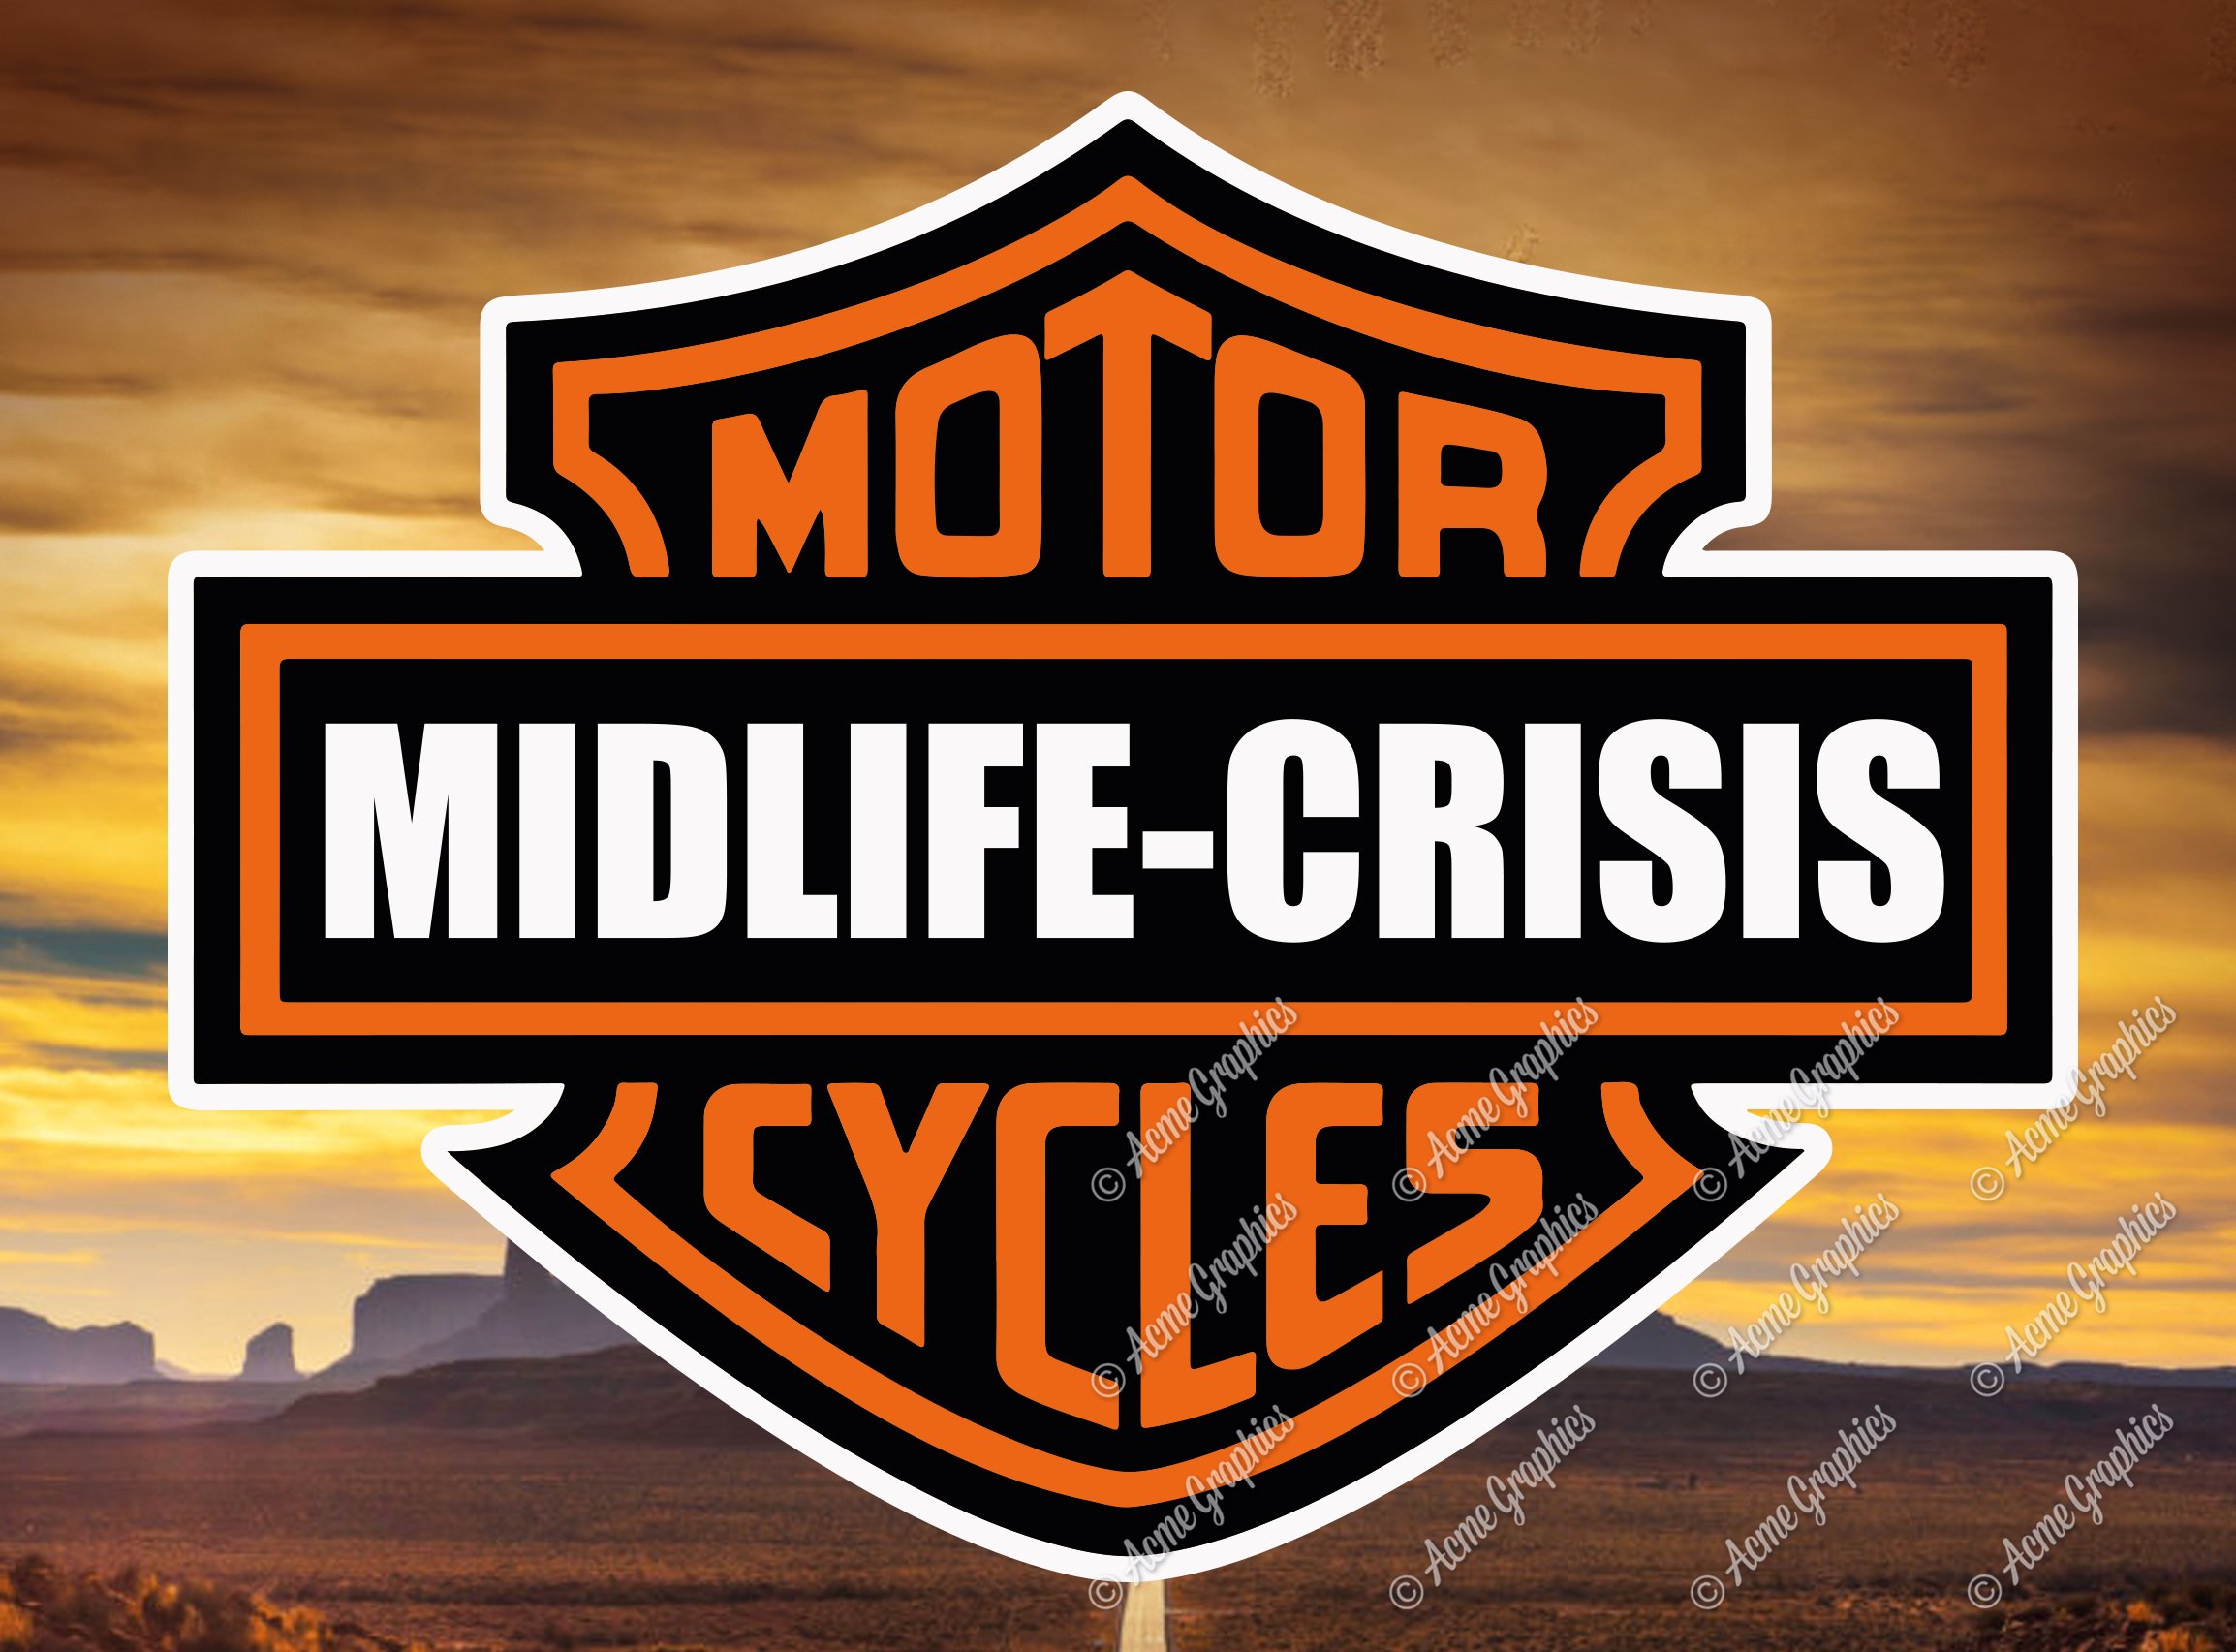 parody motorcycle company logo